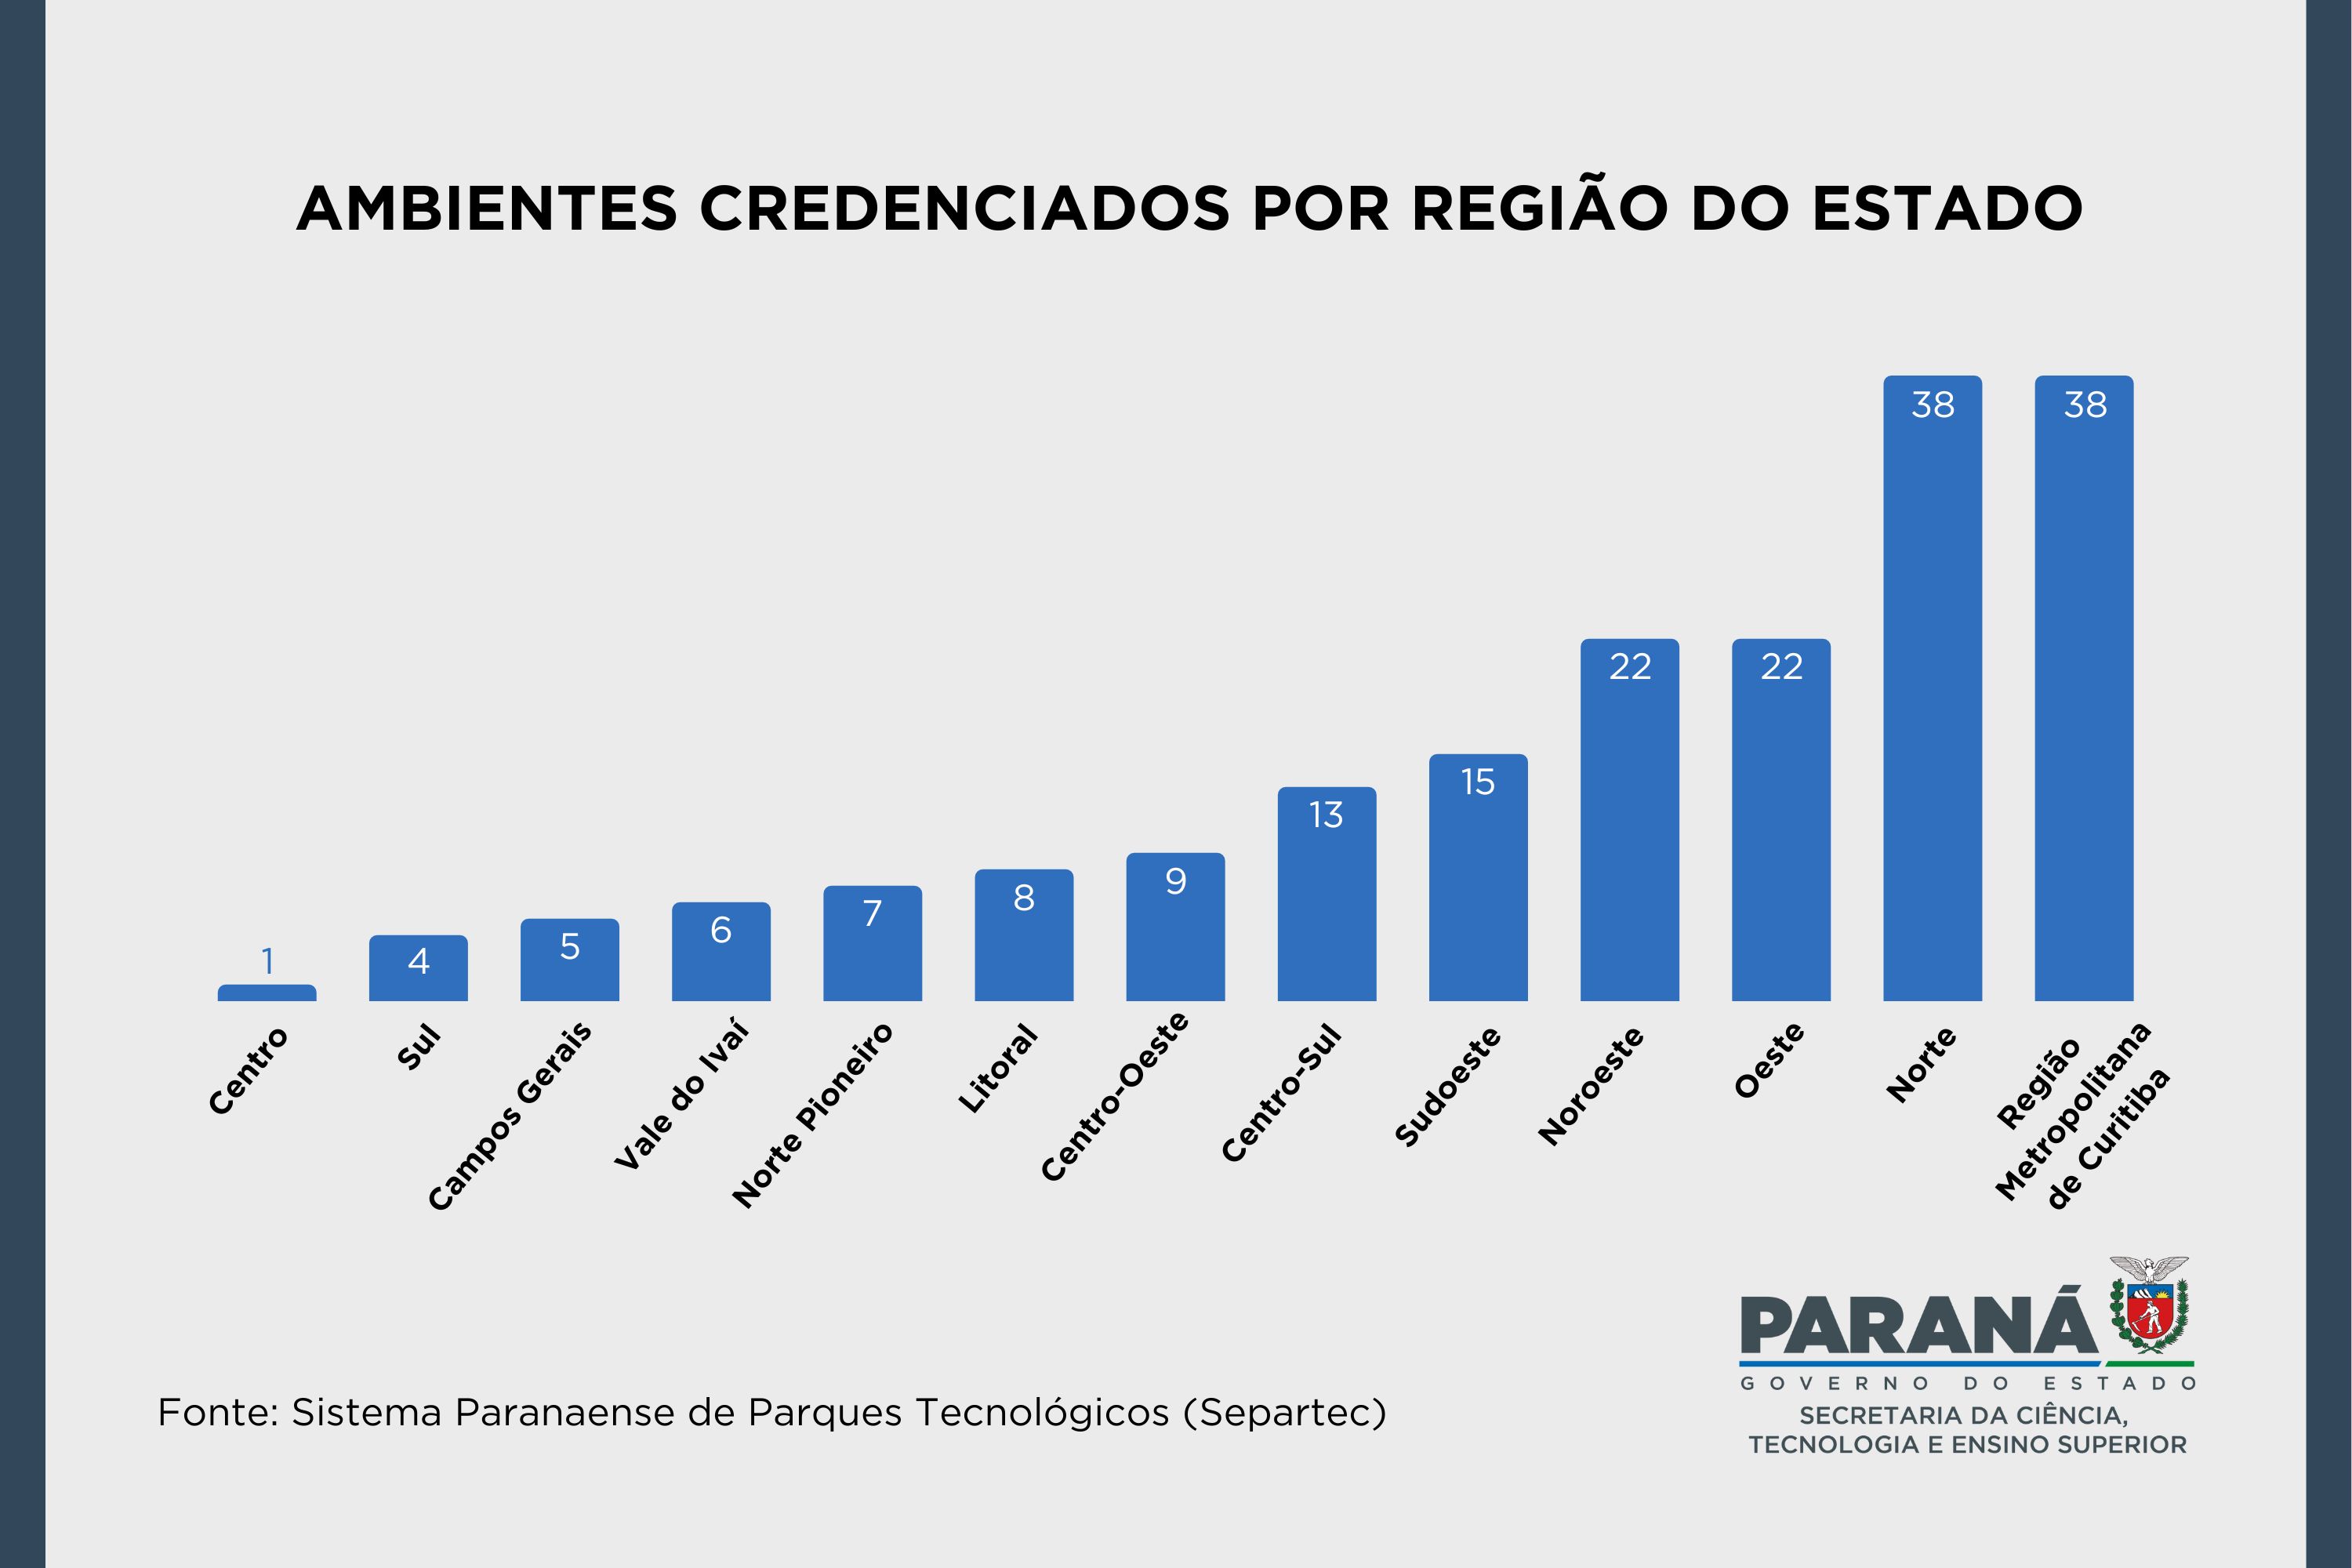 Estado credencia 188 ambientes promotores de inovação em todo Paraná